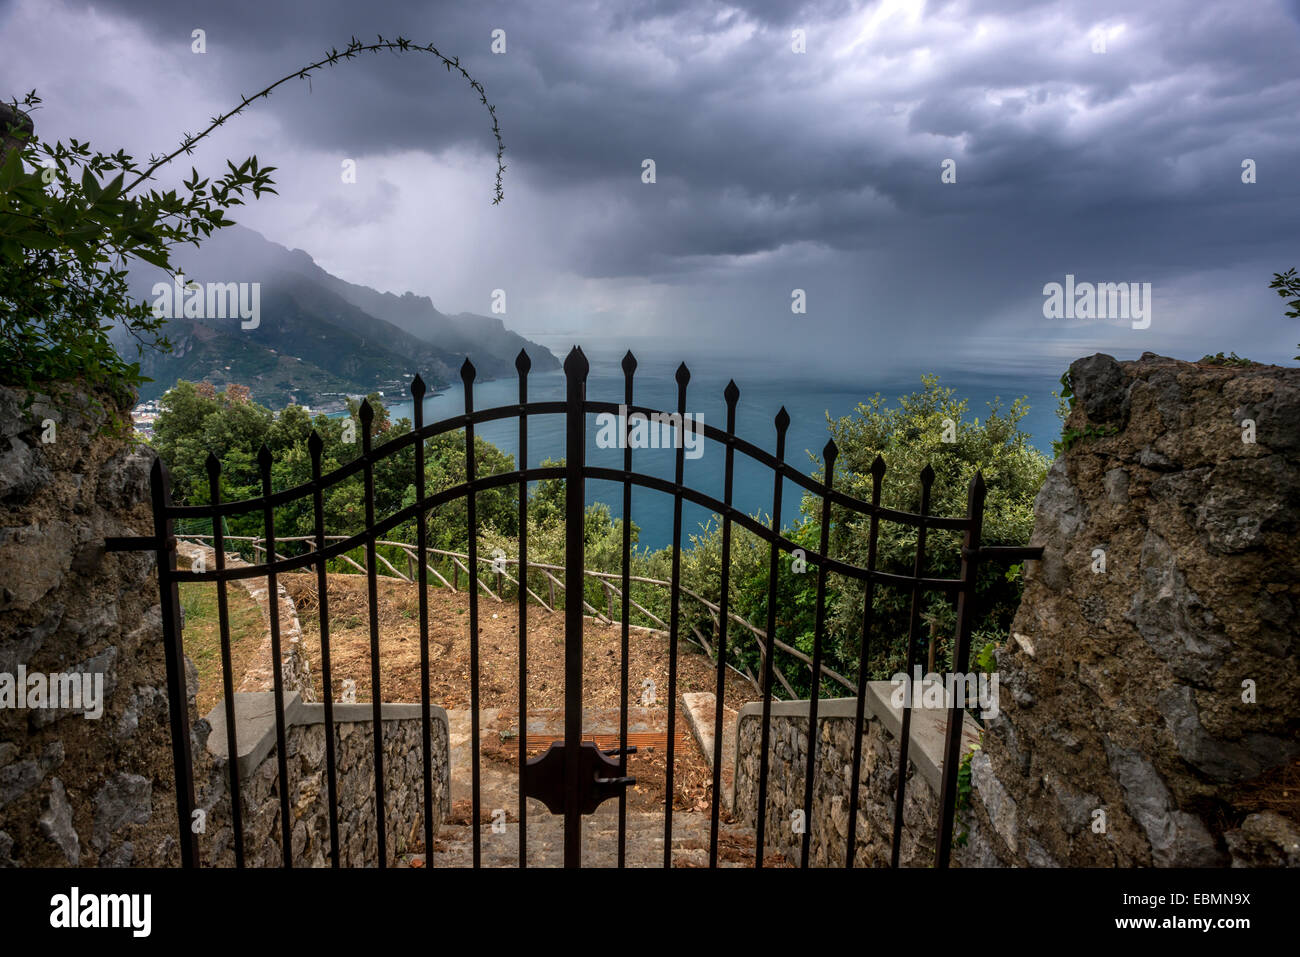 Donnant sur la côte amalfitaine depuis les jardins de la Villa Cimbrone, Ravello, Campanie, Italie. Banque D'Images